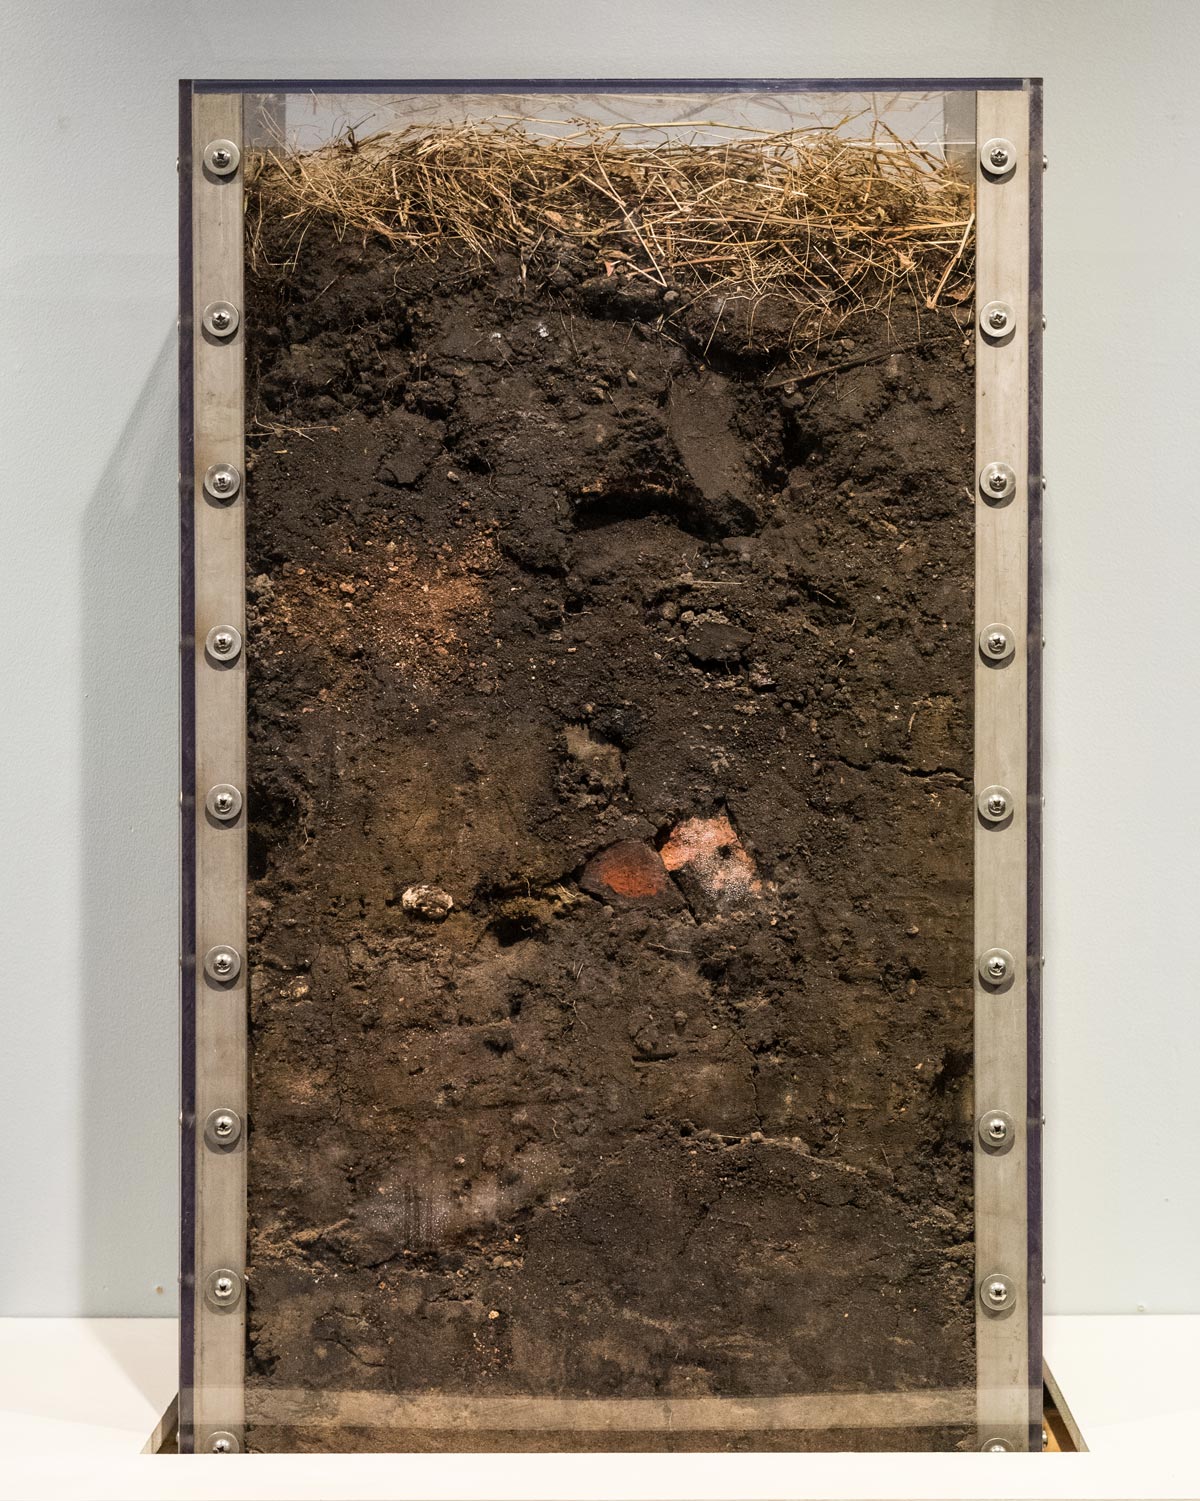 Detroit soil sample